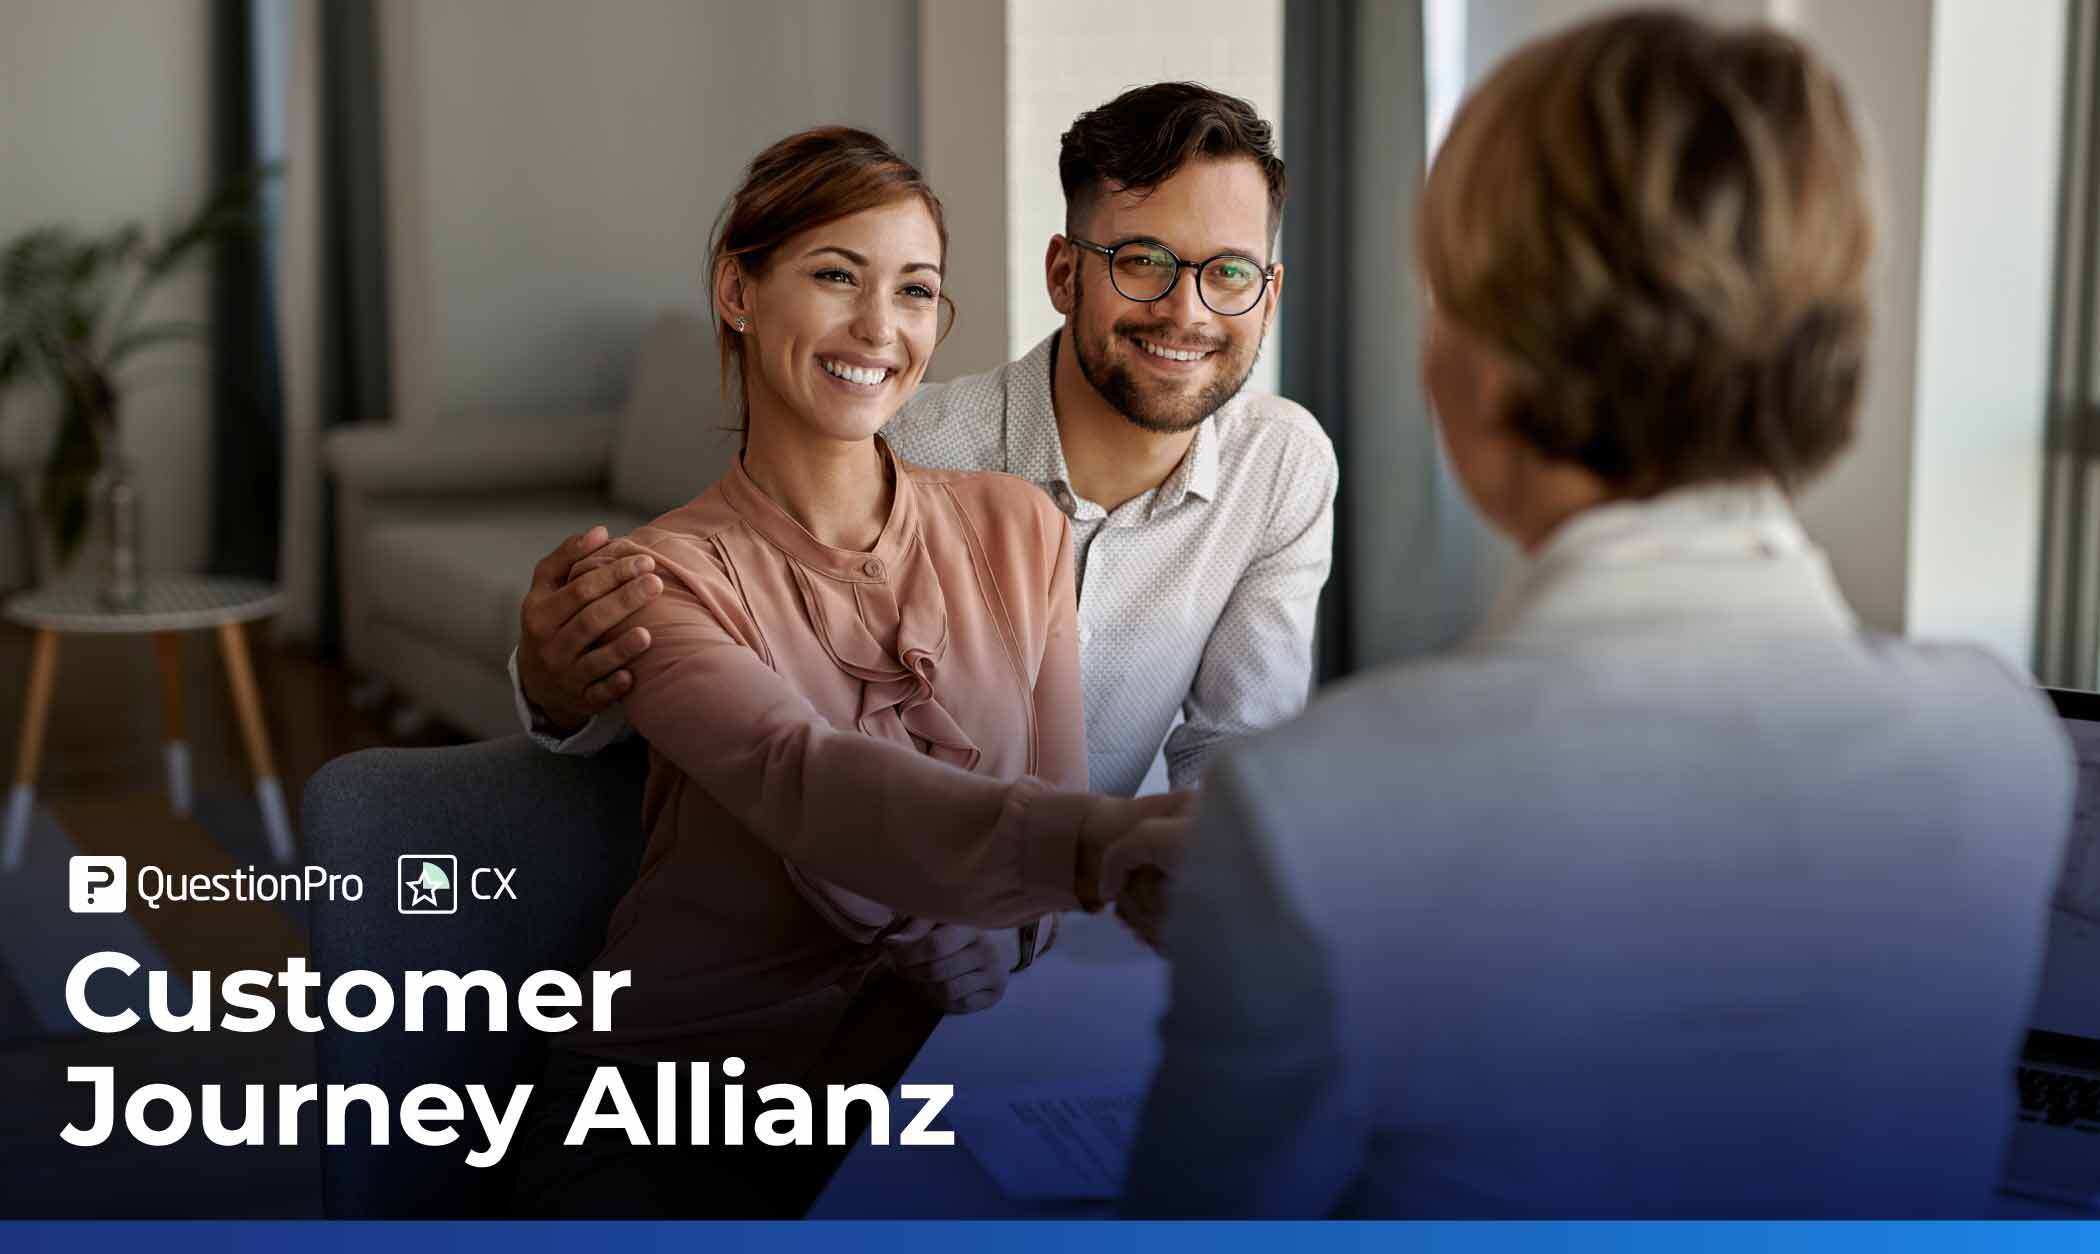 experiencia del cliente en Allianz